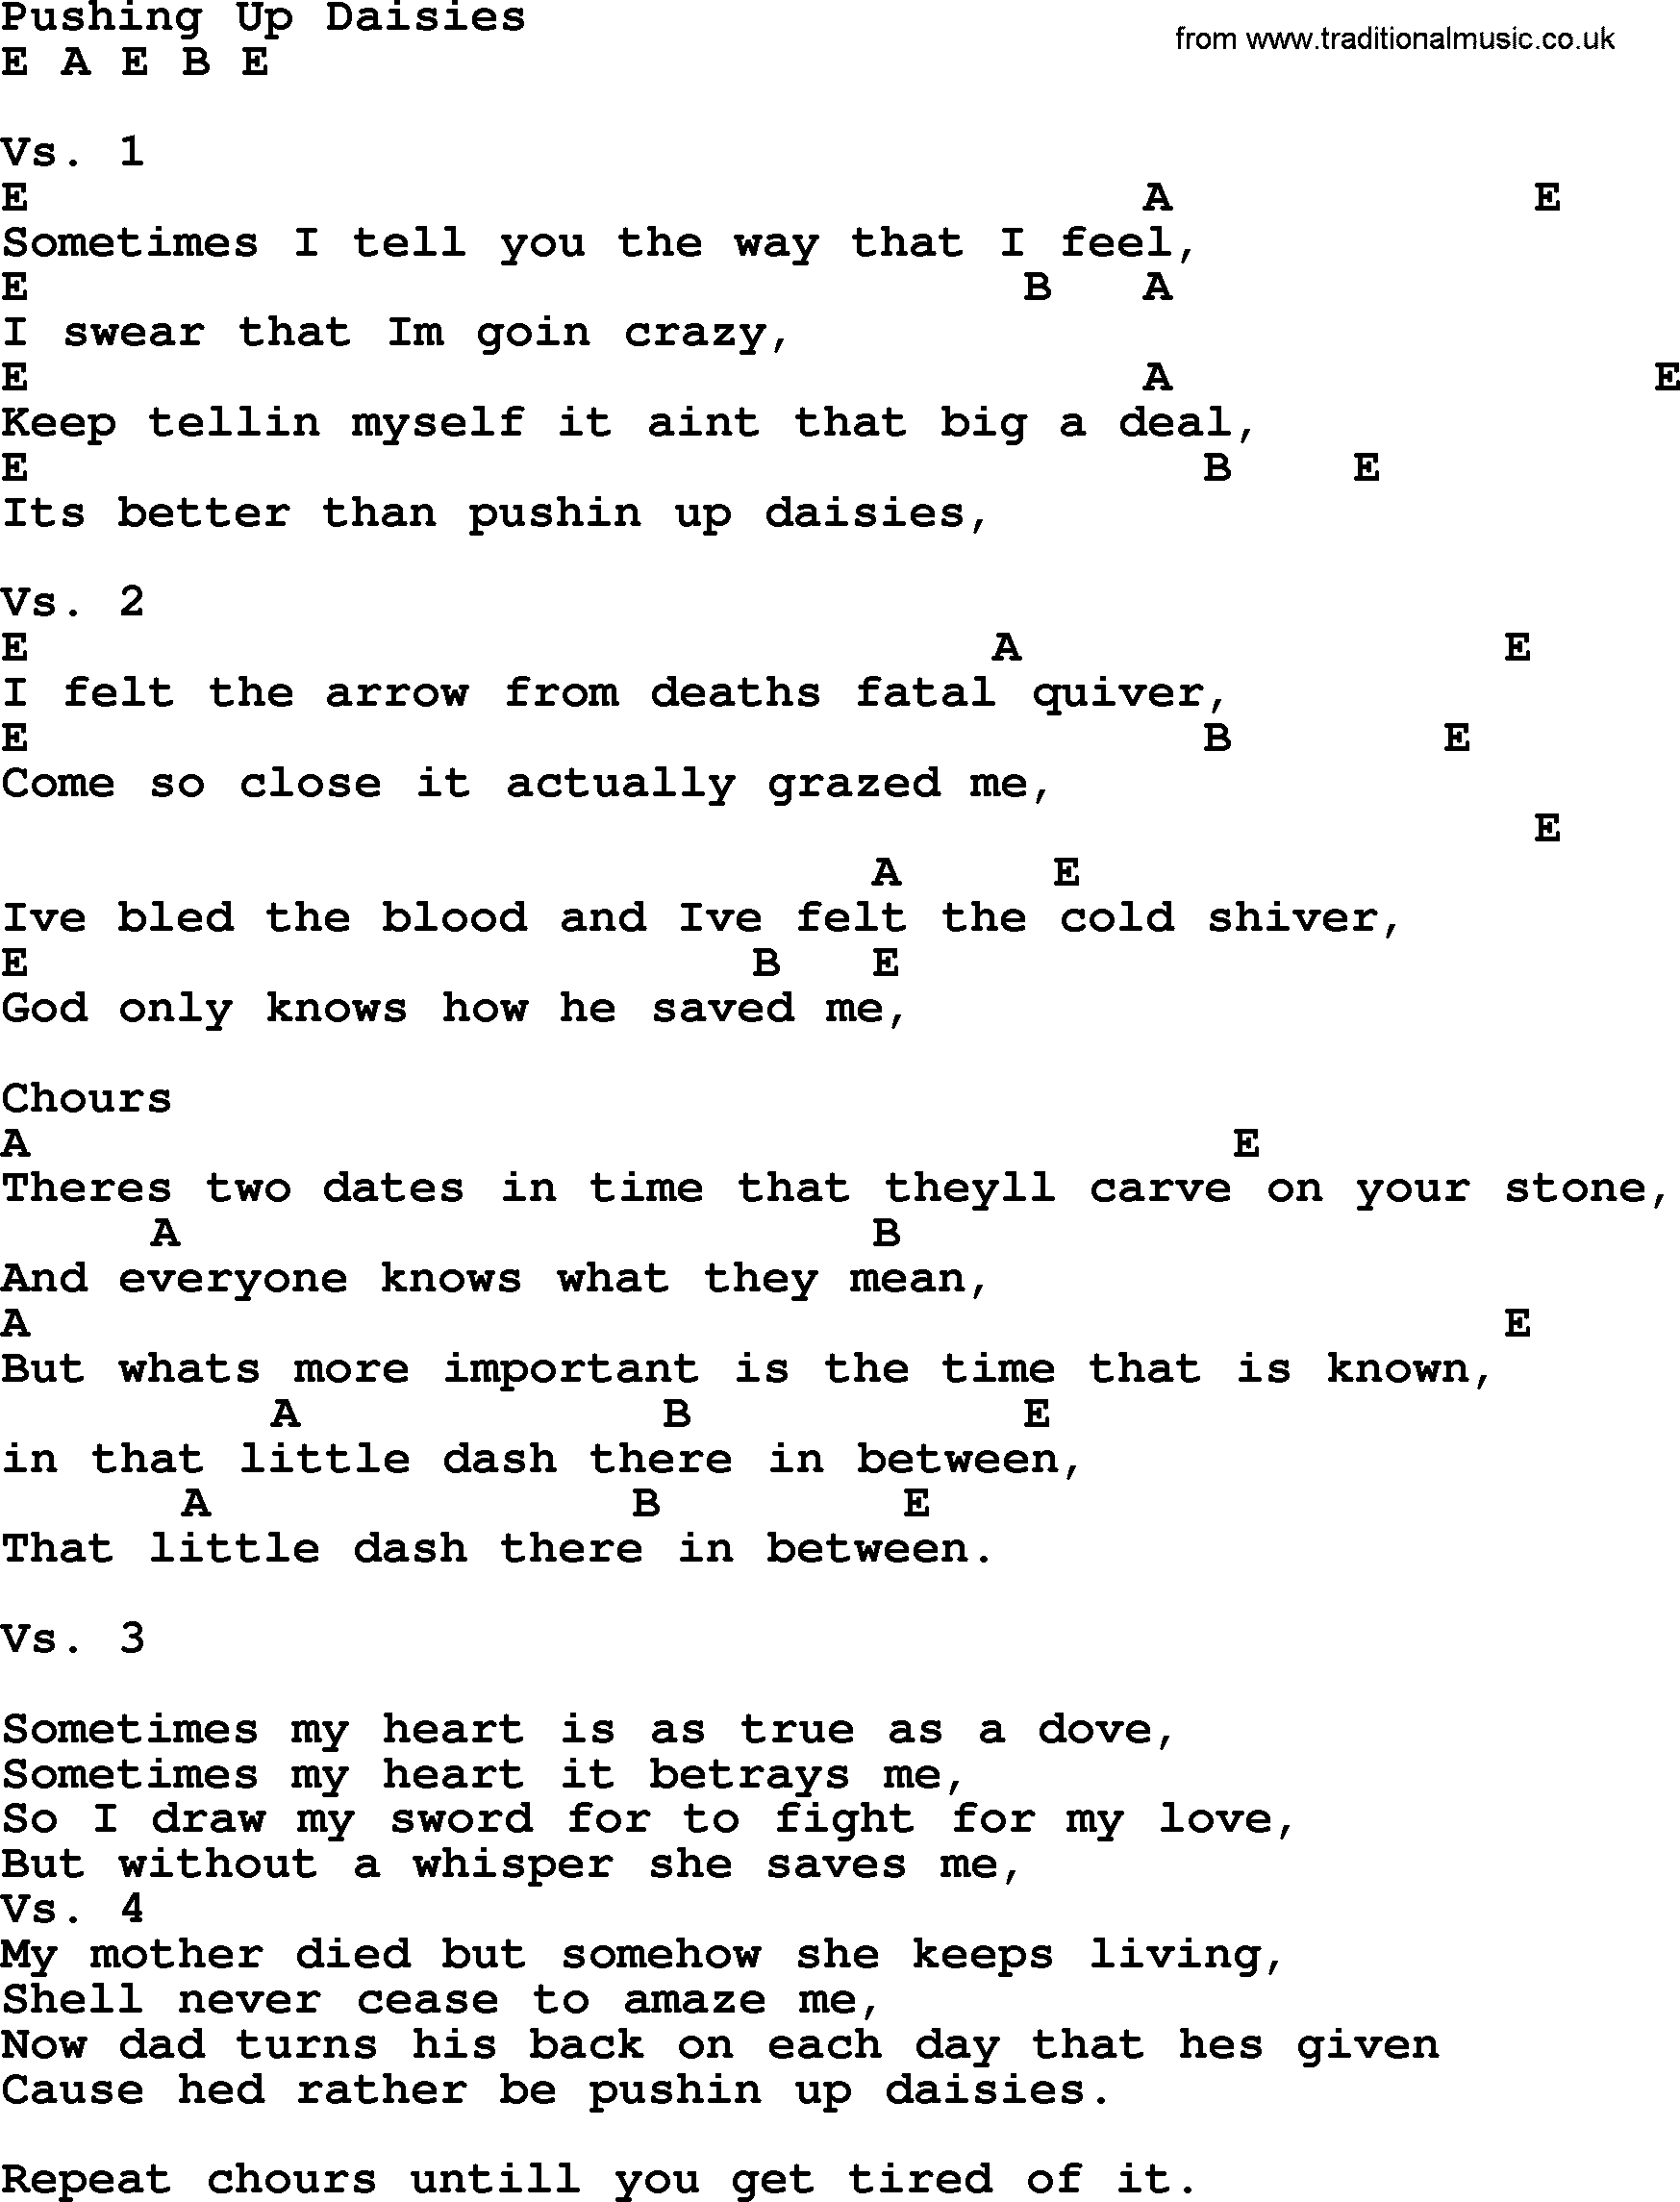 Garth Brooks song: Pushing Up Daisies, lyrics and chords